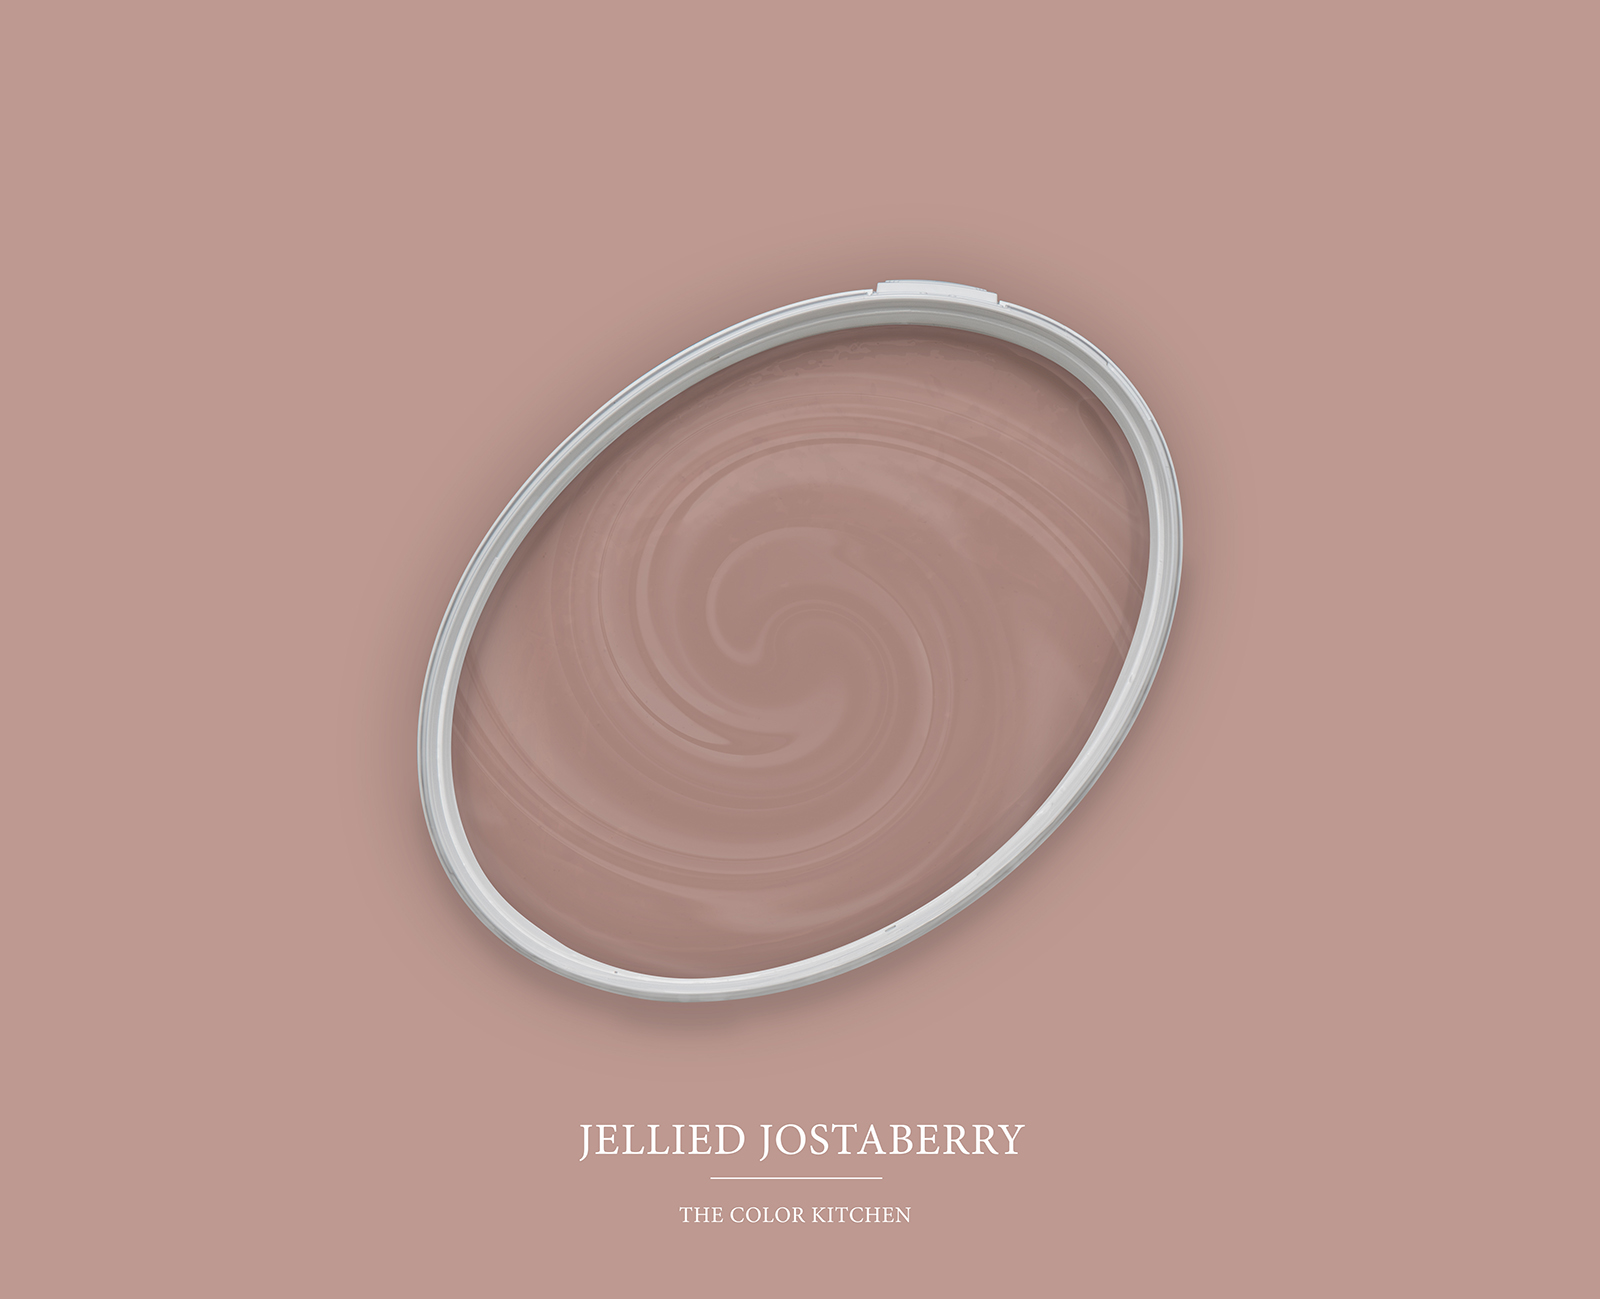 Wall Paint TCK7002 »Jellied Jostaberry« in reddish beige – 5.0 litre
